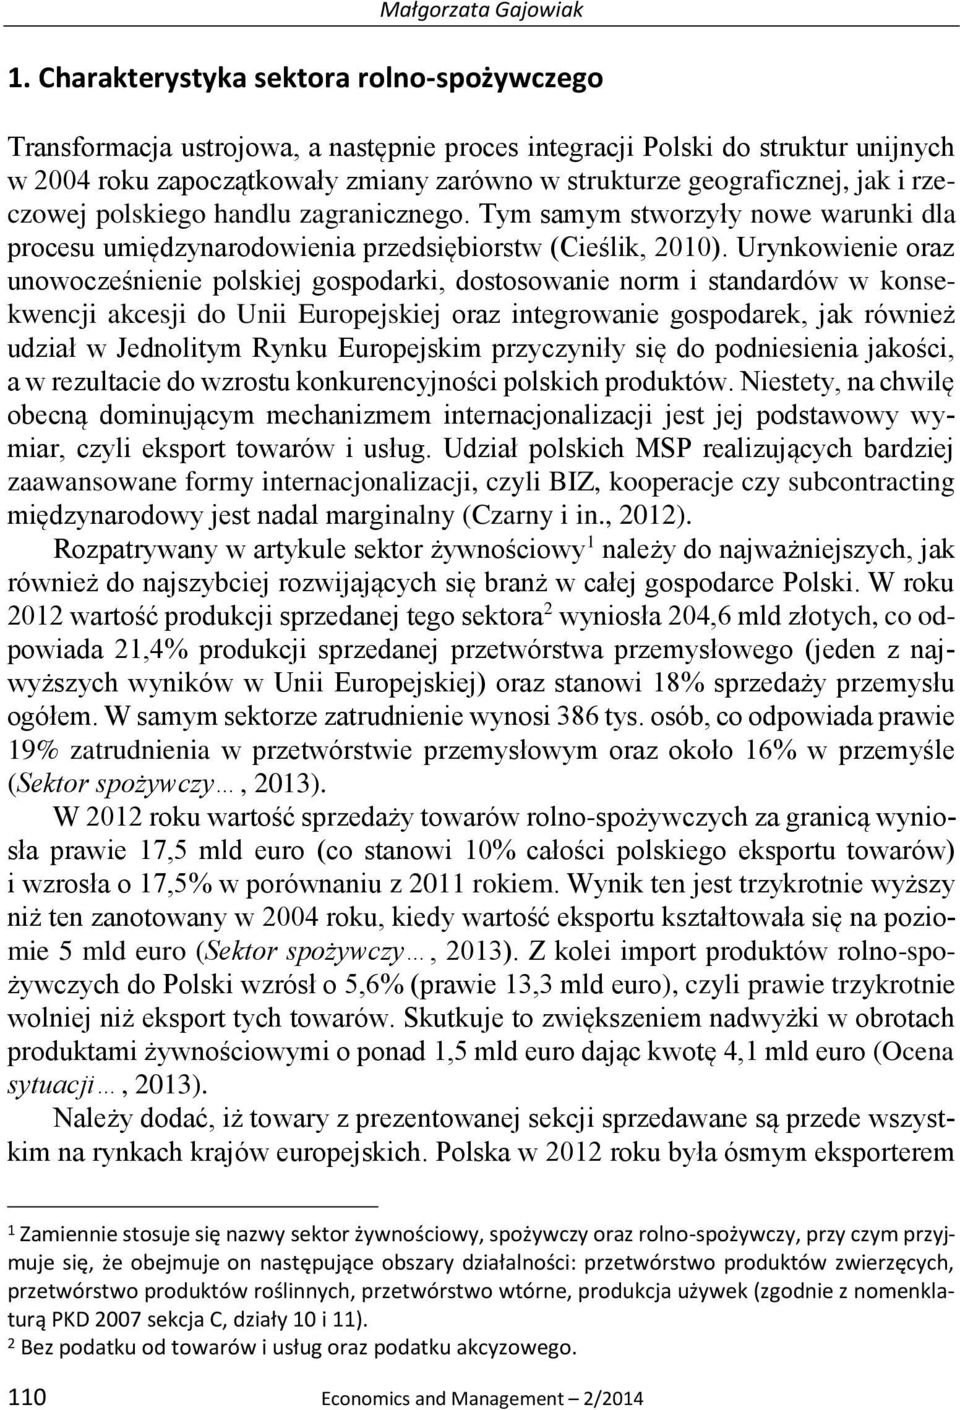 i rzeczowej polskiego handlu zagranicznego. Tym samym stworzyły nowe warunki dla procesu umiędzynarodowienia przedsiębiorstw (Cieślik, 2010).